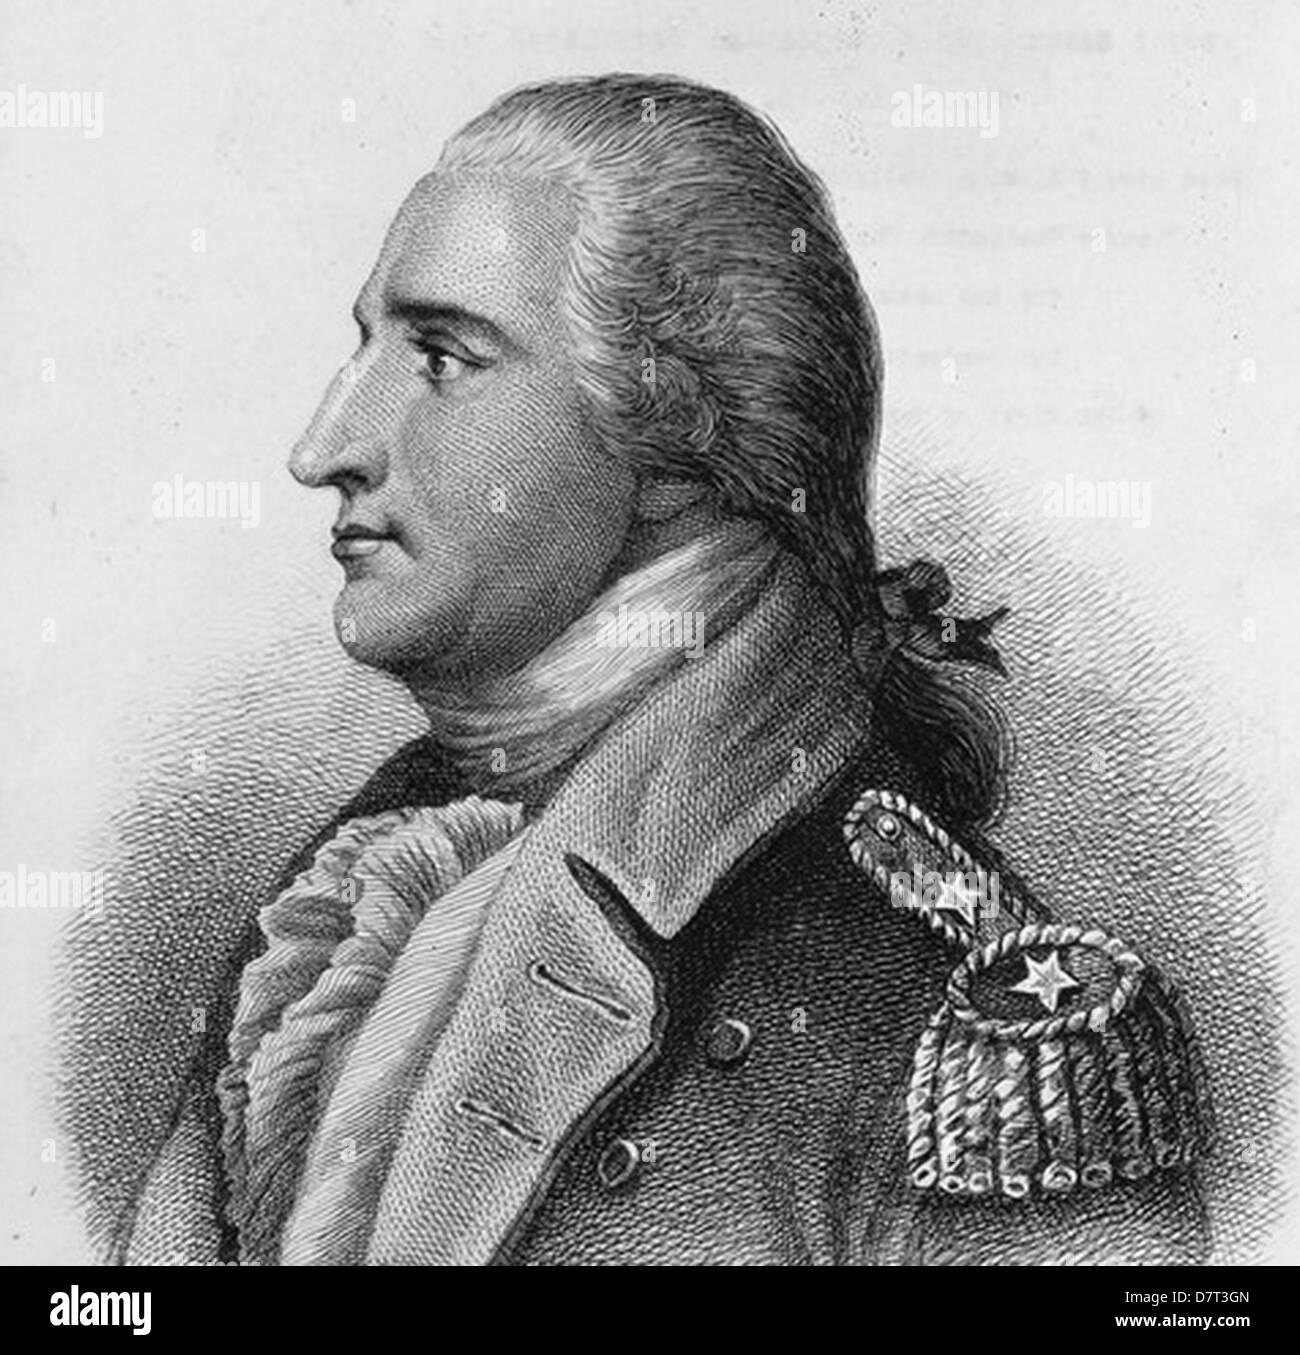 BENEDICT ARNOLD (1741-1801) général américain qui a fait défection de l'armée britannique pendant la guerre d'Indépendance Américaine Banque D'Images